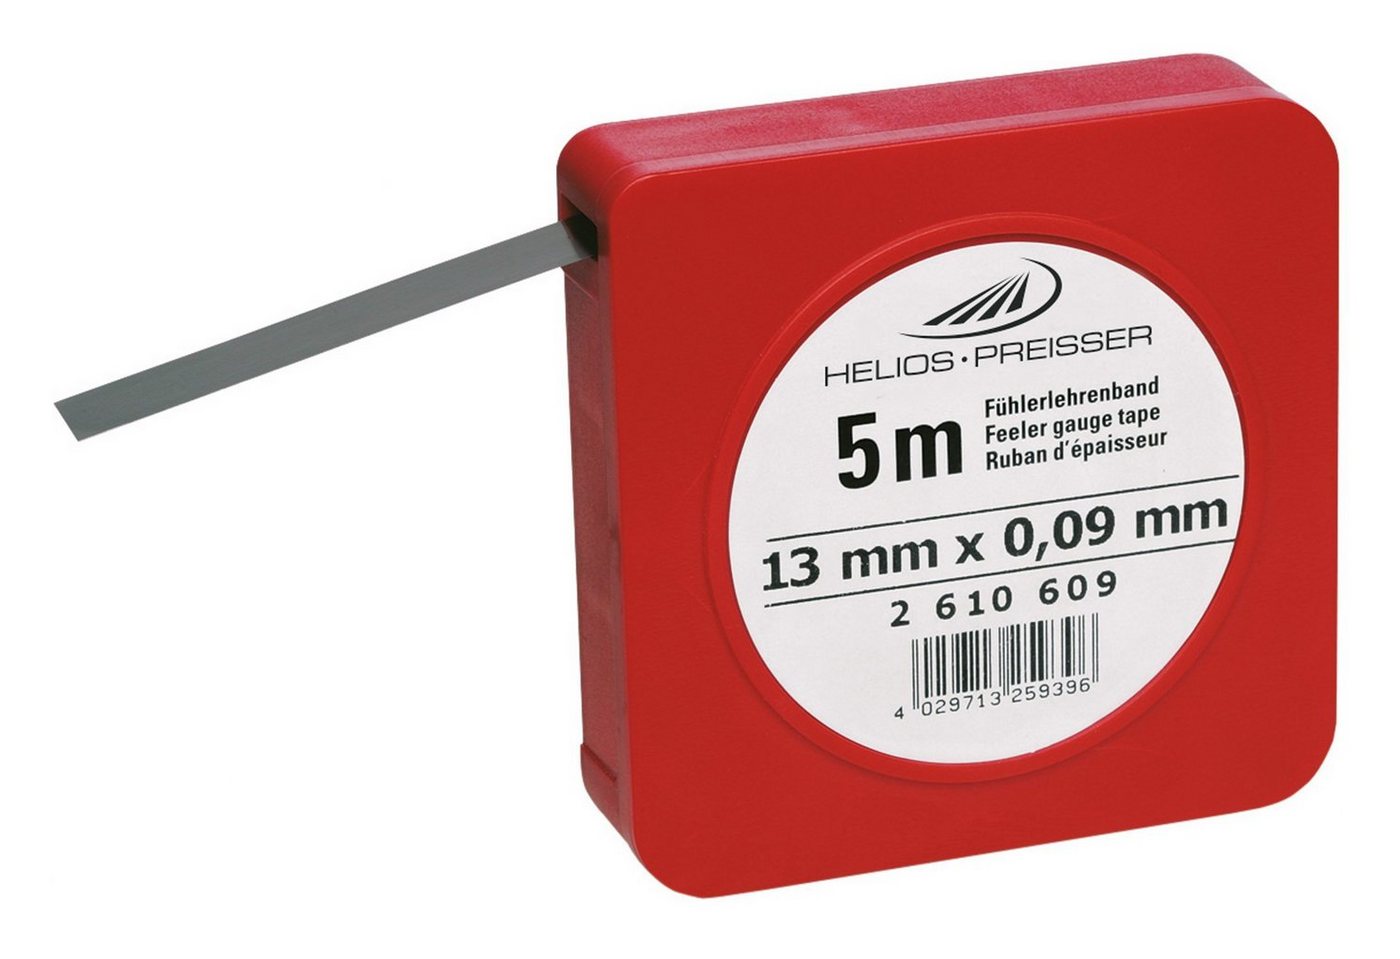 HELIOS PREISSER Fühlerlehre, Fühlerlehrenband 0,06 mm von HELIOS PREISSER